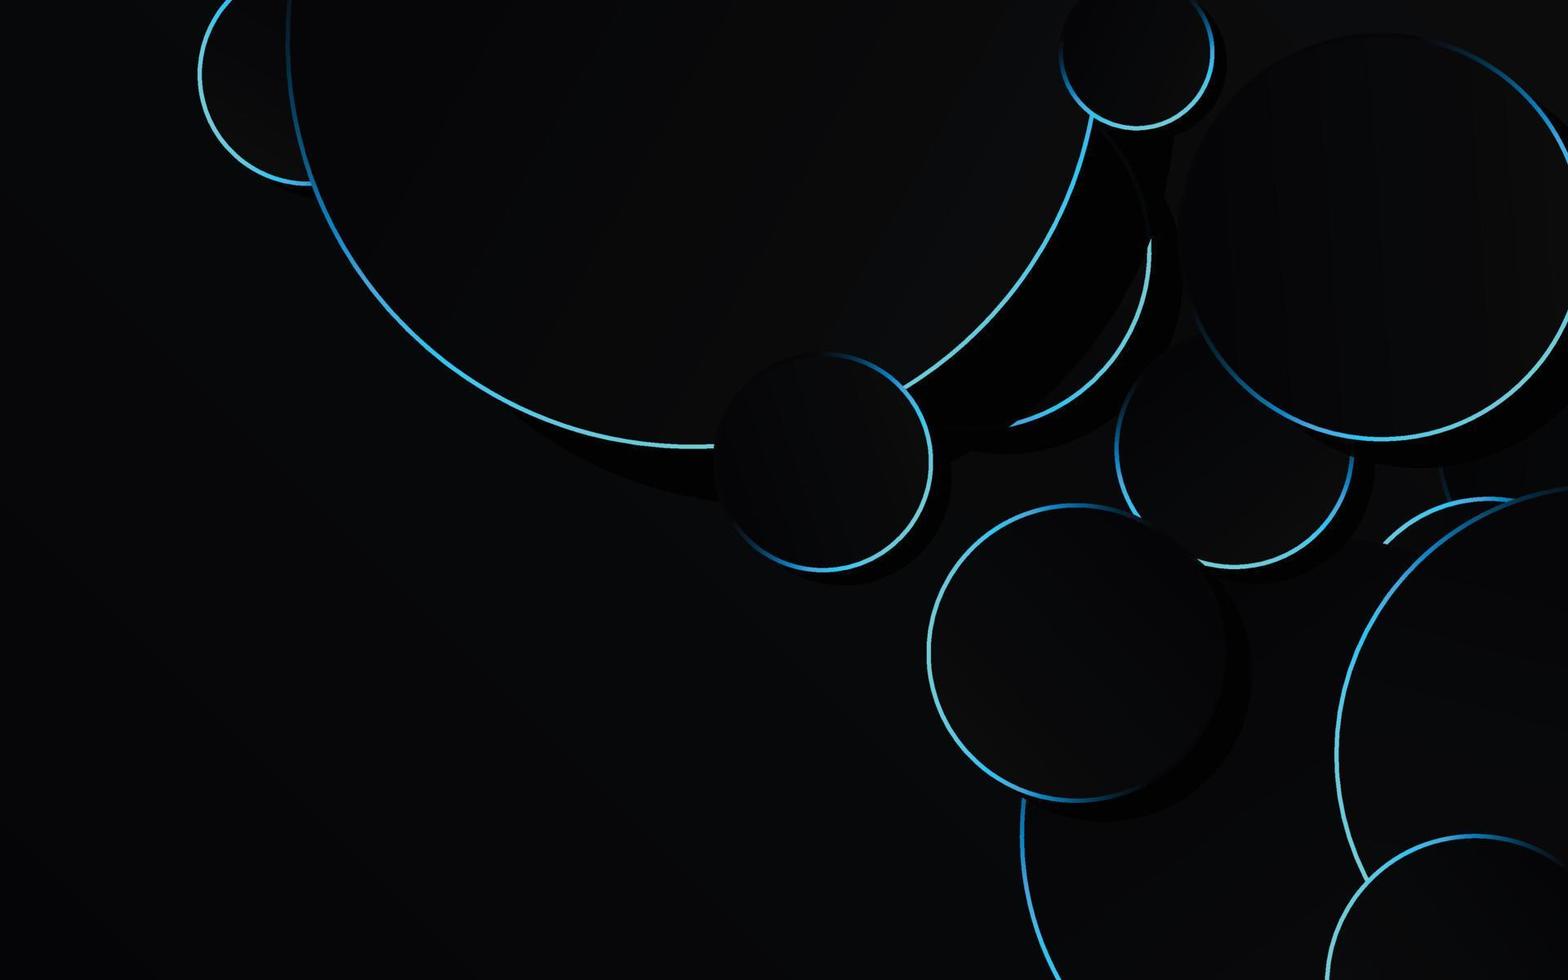 círculo azul abstrato na tecnologia de fundo preto vetor